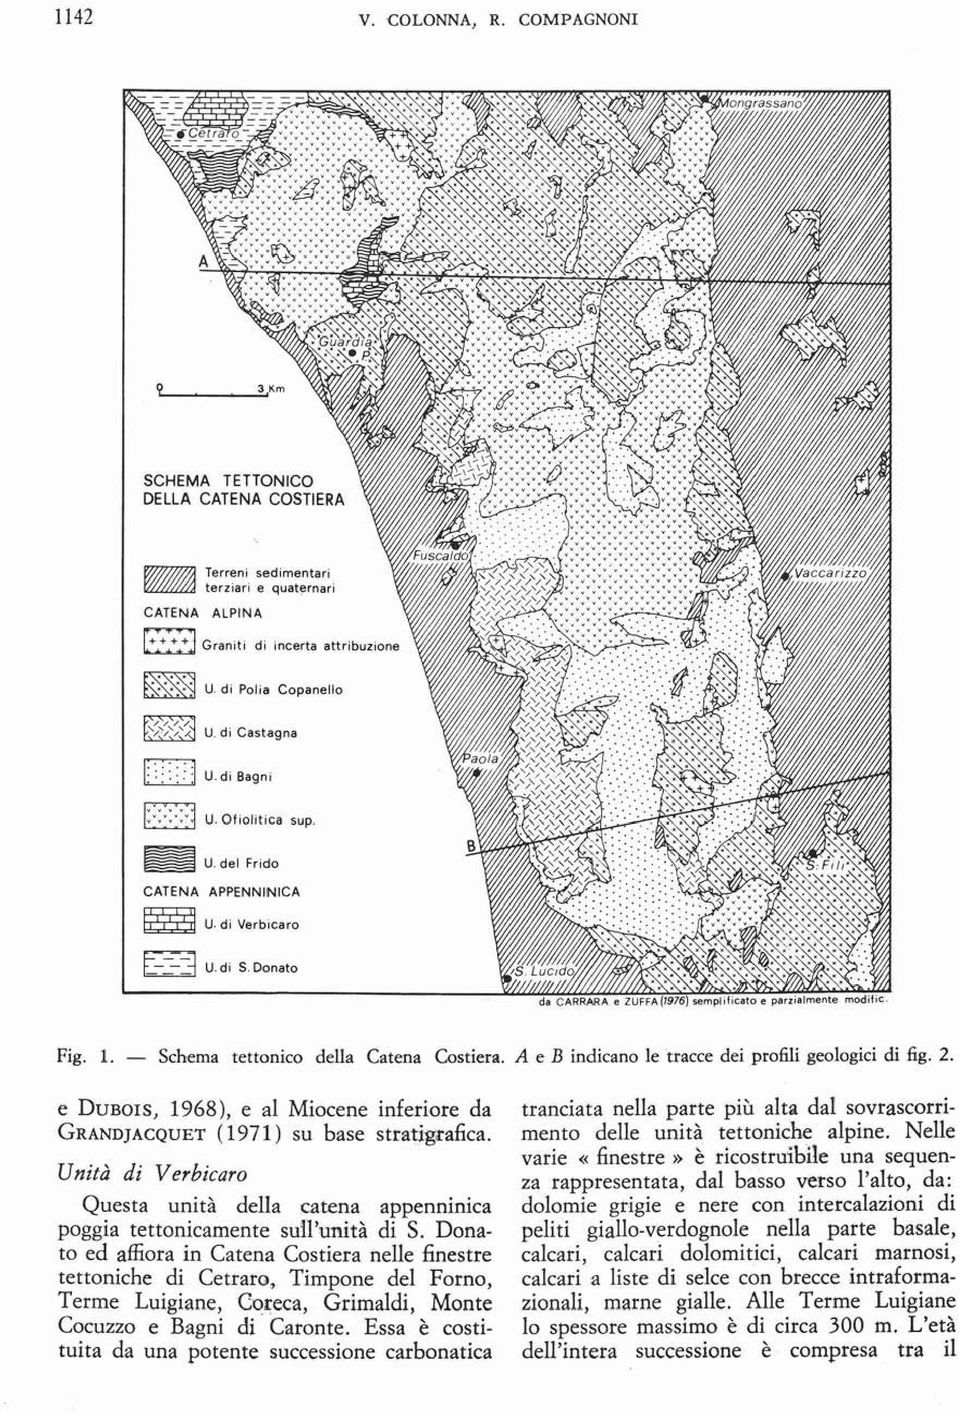 - Schema tcuonioo della Catena CostiCfll. A c n indicano le tracce dei profili geologici di fig. 2. e DUBOIS, 1968), e al Miocene inferiore da GRANDJACQUET (1971) su base stratigrafica.